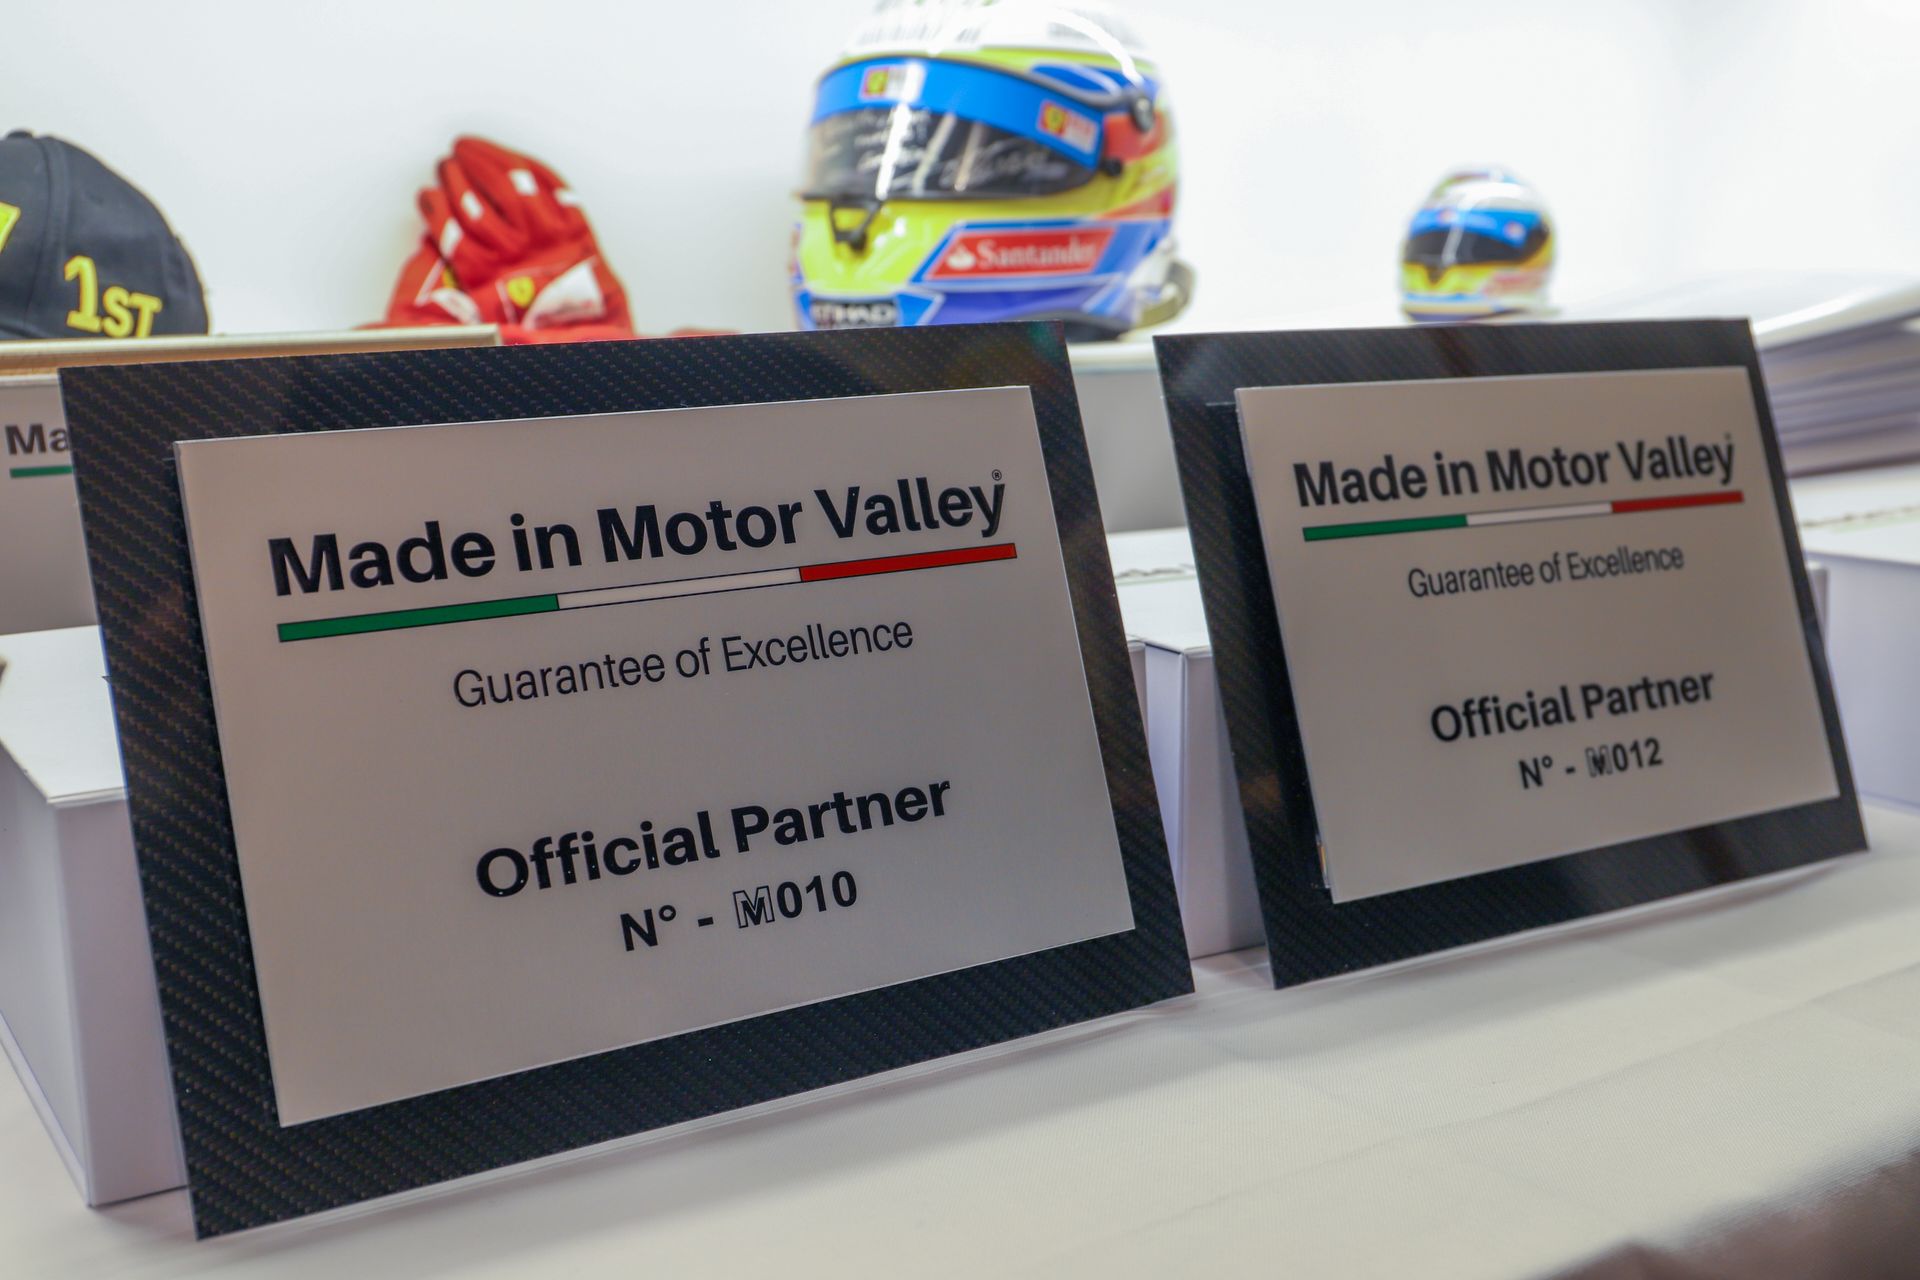 ບາງແຜ່ນທໍາອິດຂອງບໍລິສັດທີ່ເຂົ້າຮ່ວມໂຄງການ "Made in Motor Valley".